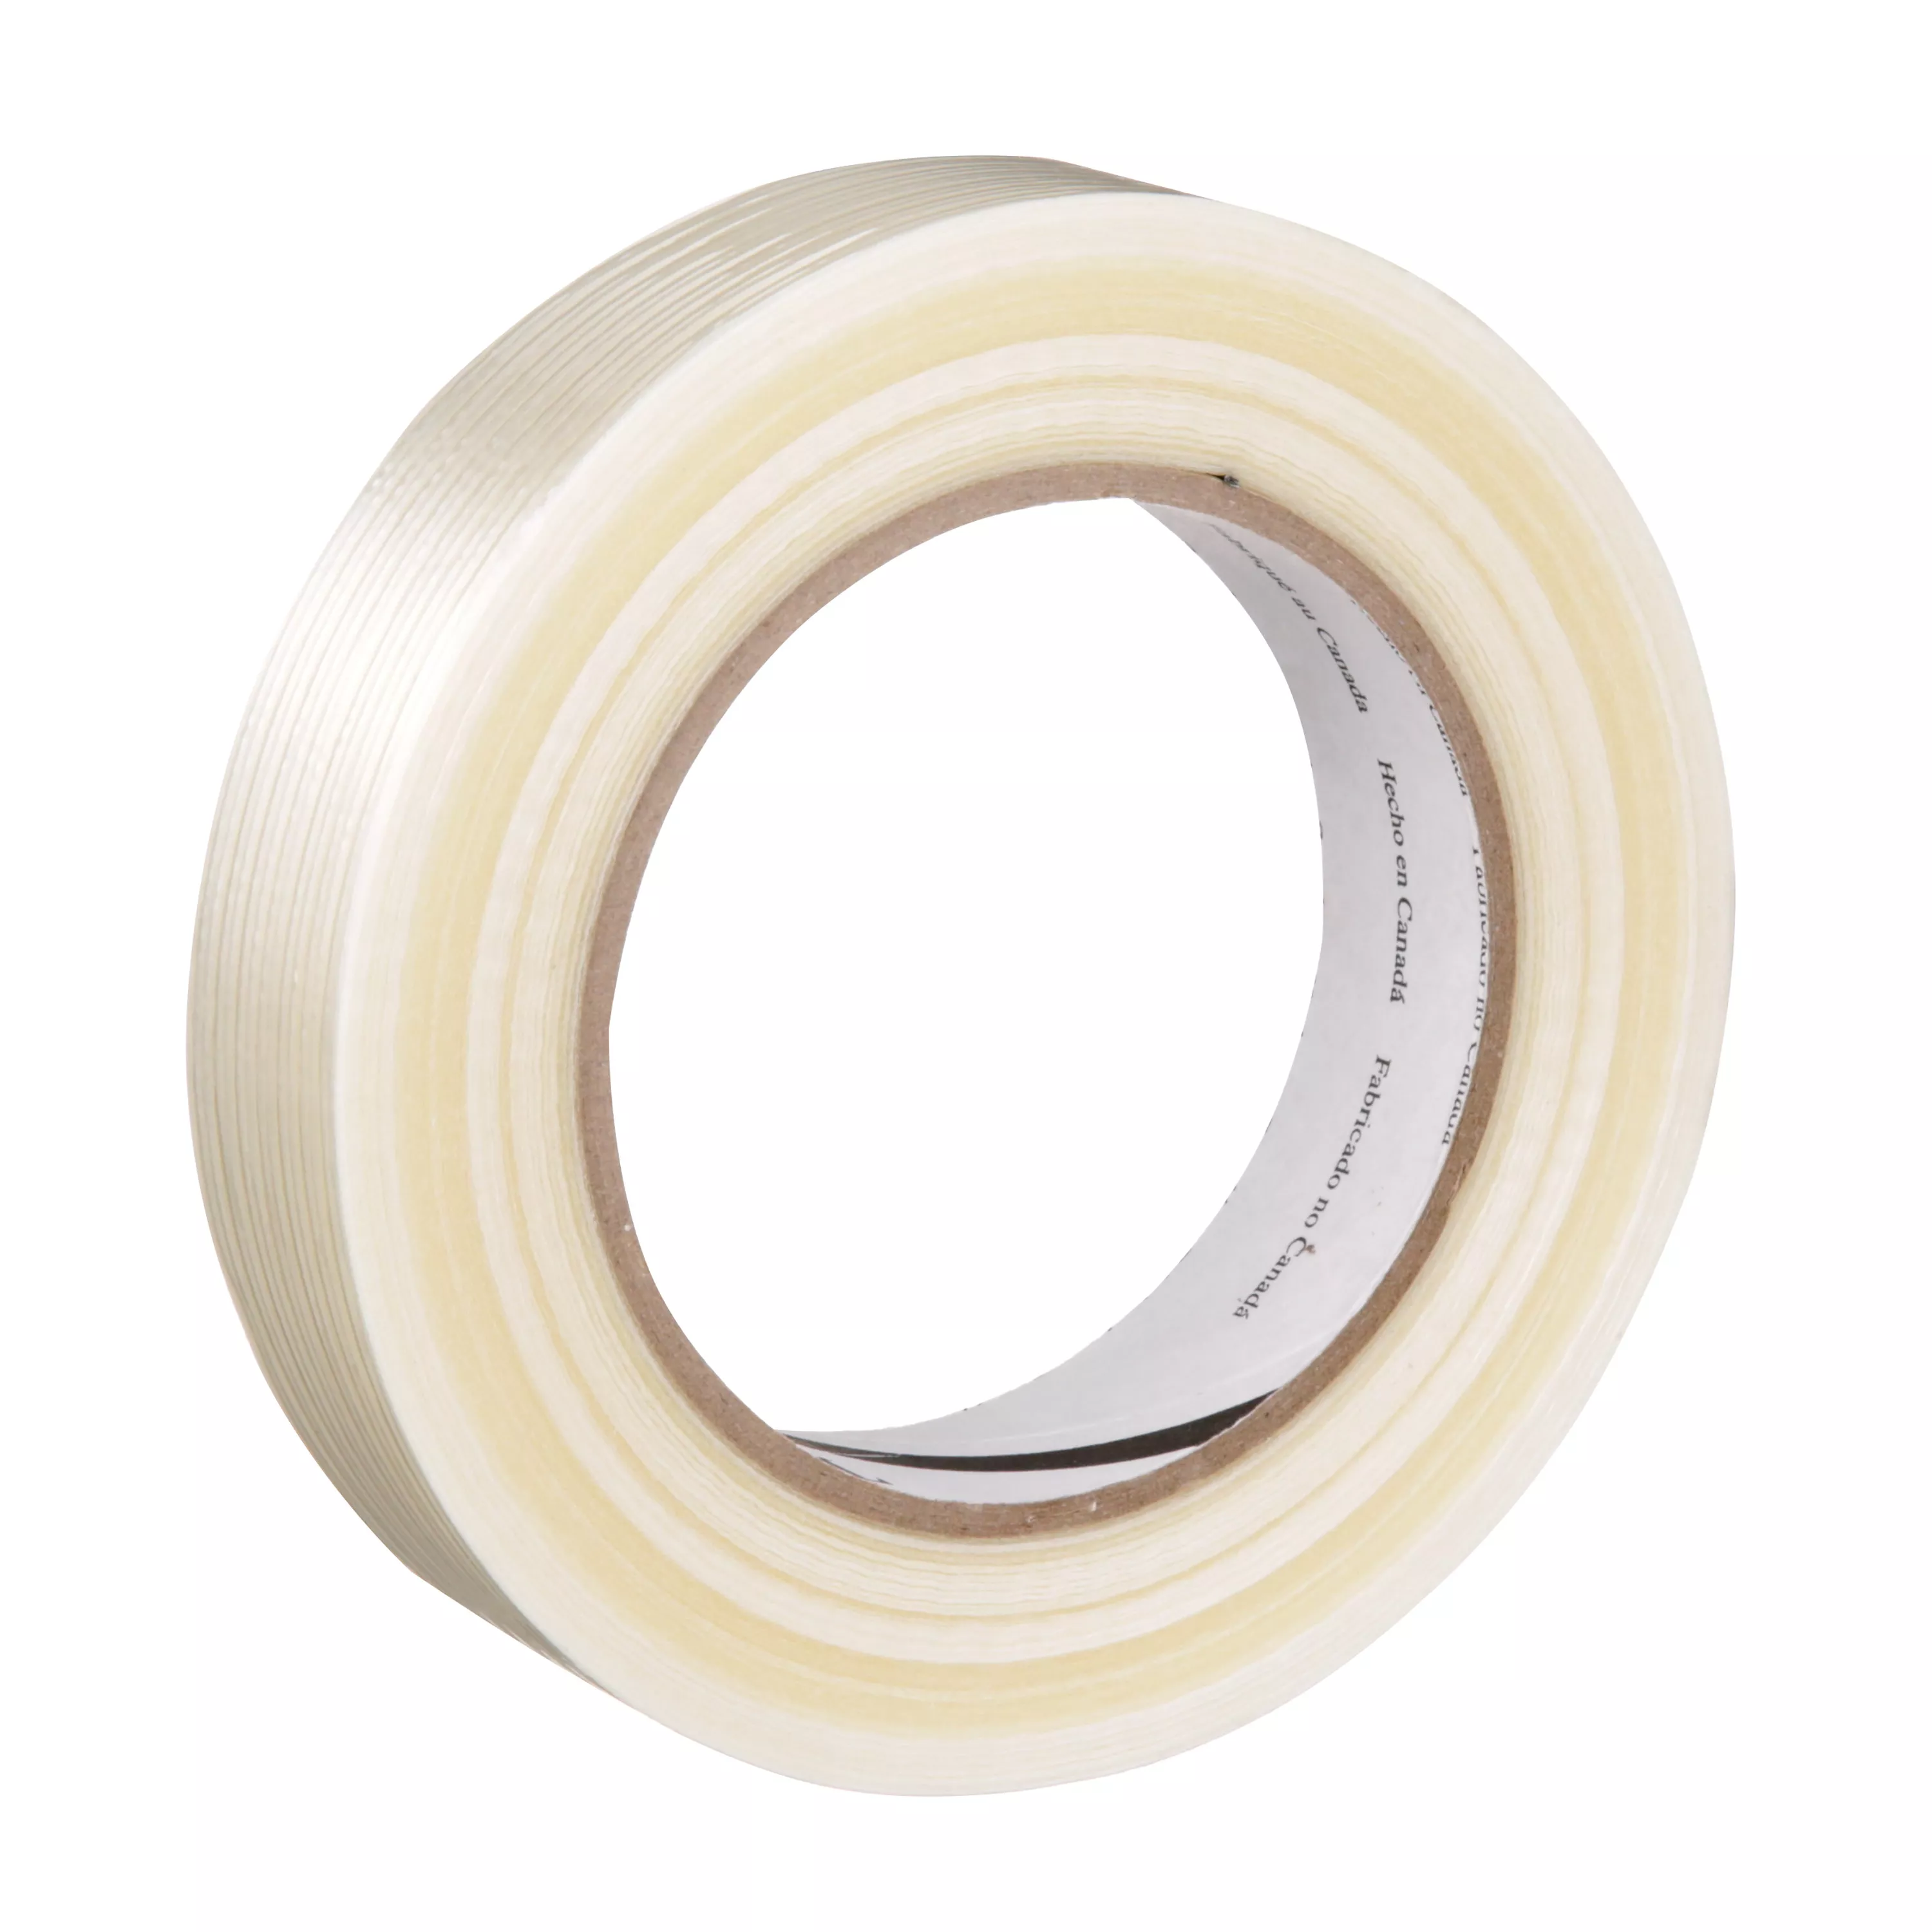 Tartan™ Filament Tape 8934, Clear, 24 mm x 55 m, 4 mil, 36 Roll/Case